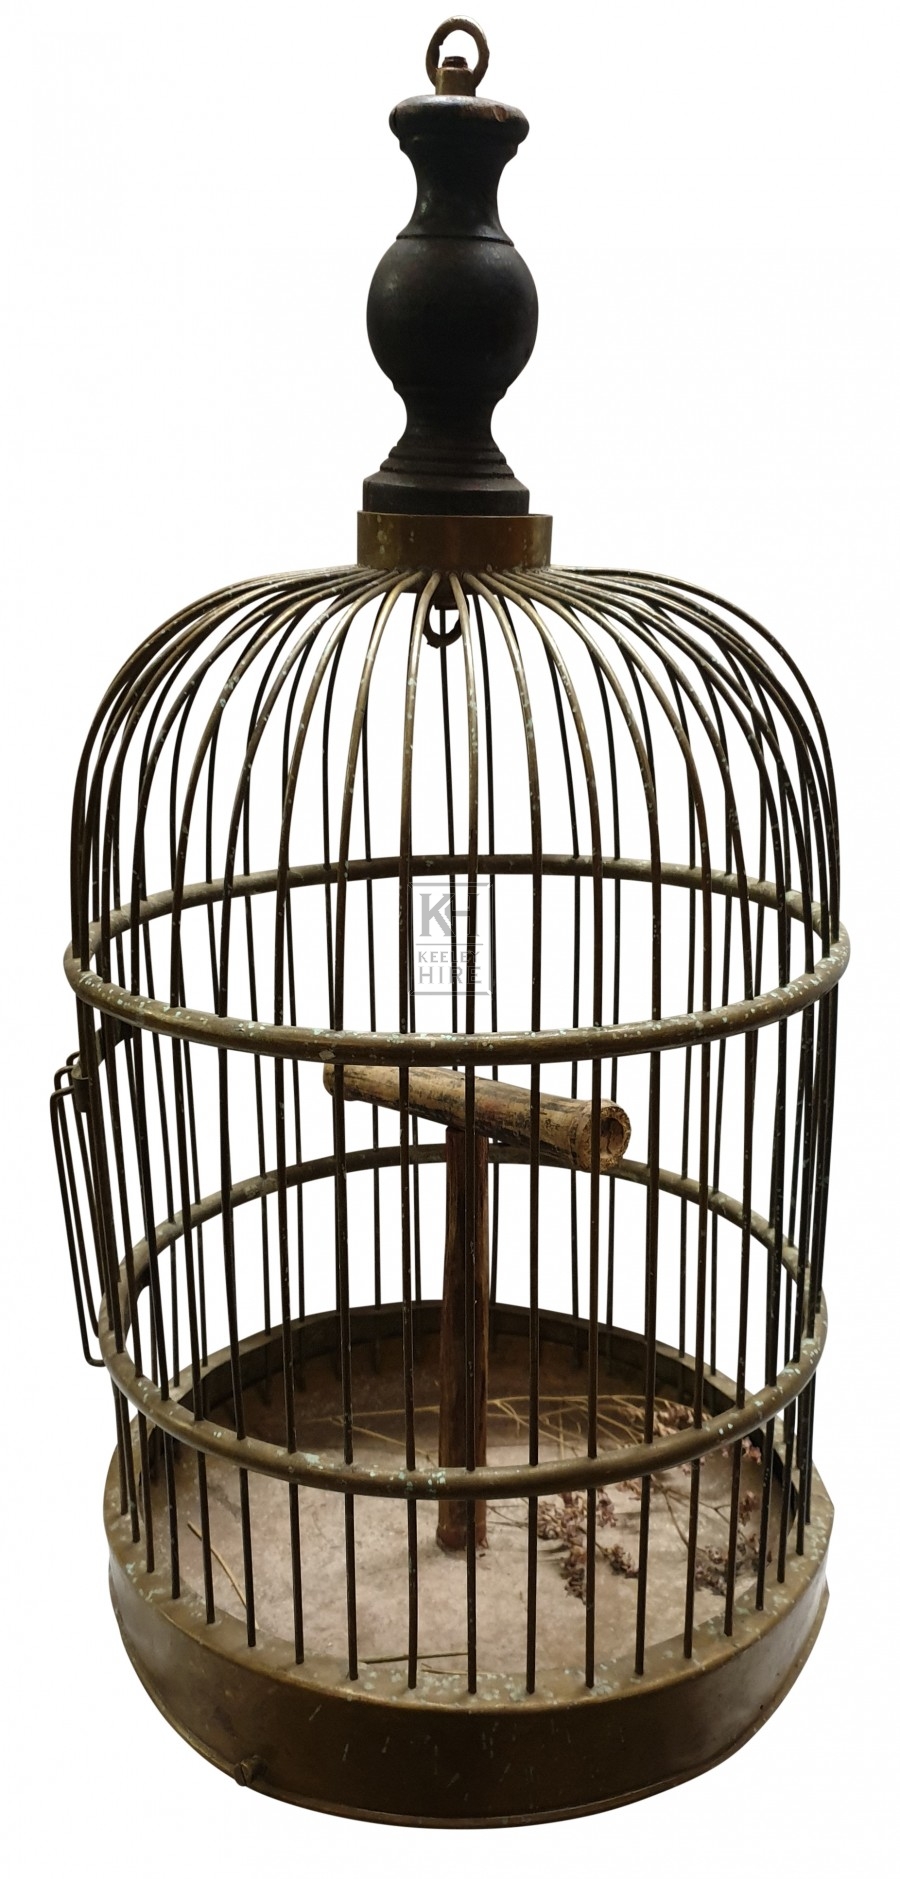 Copper dome bird cage